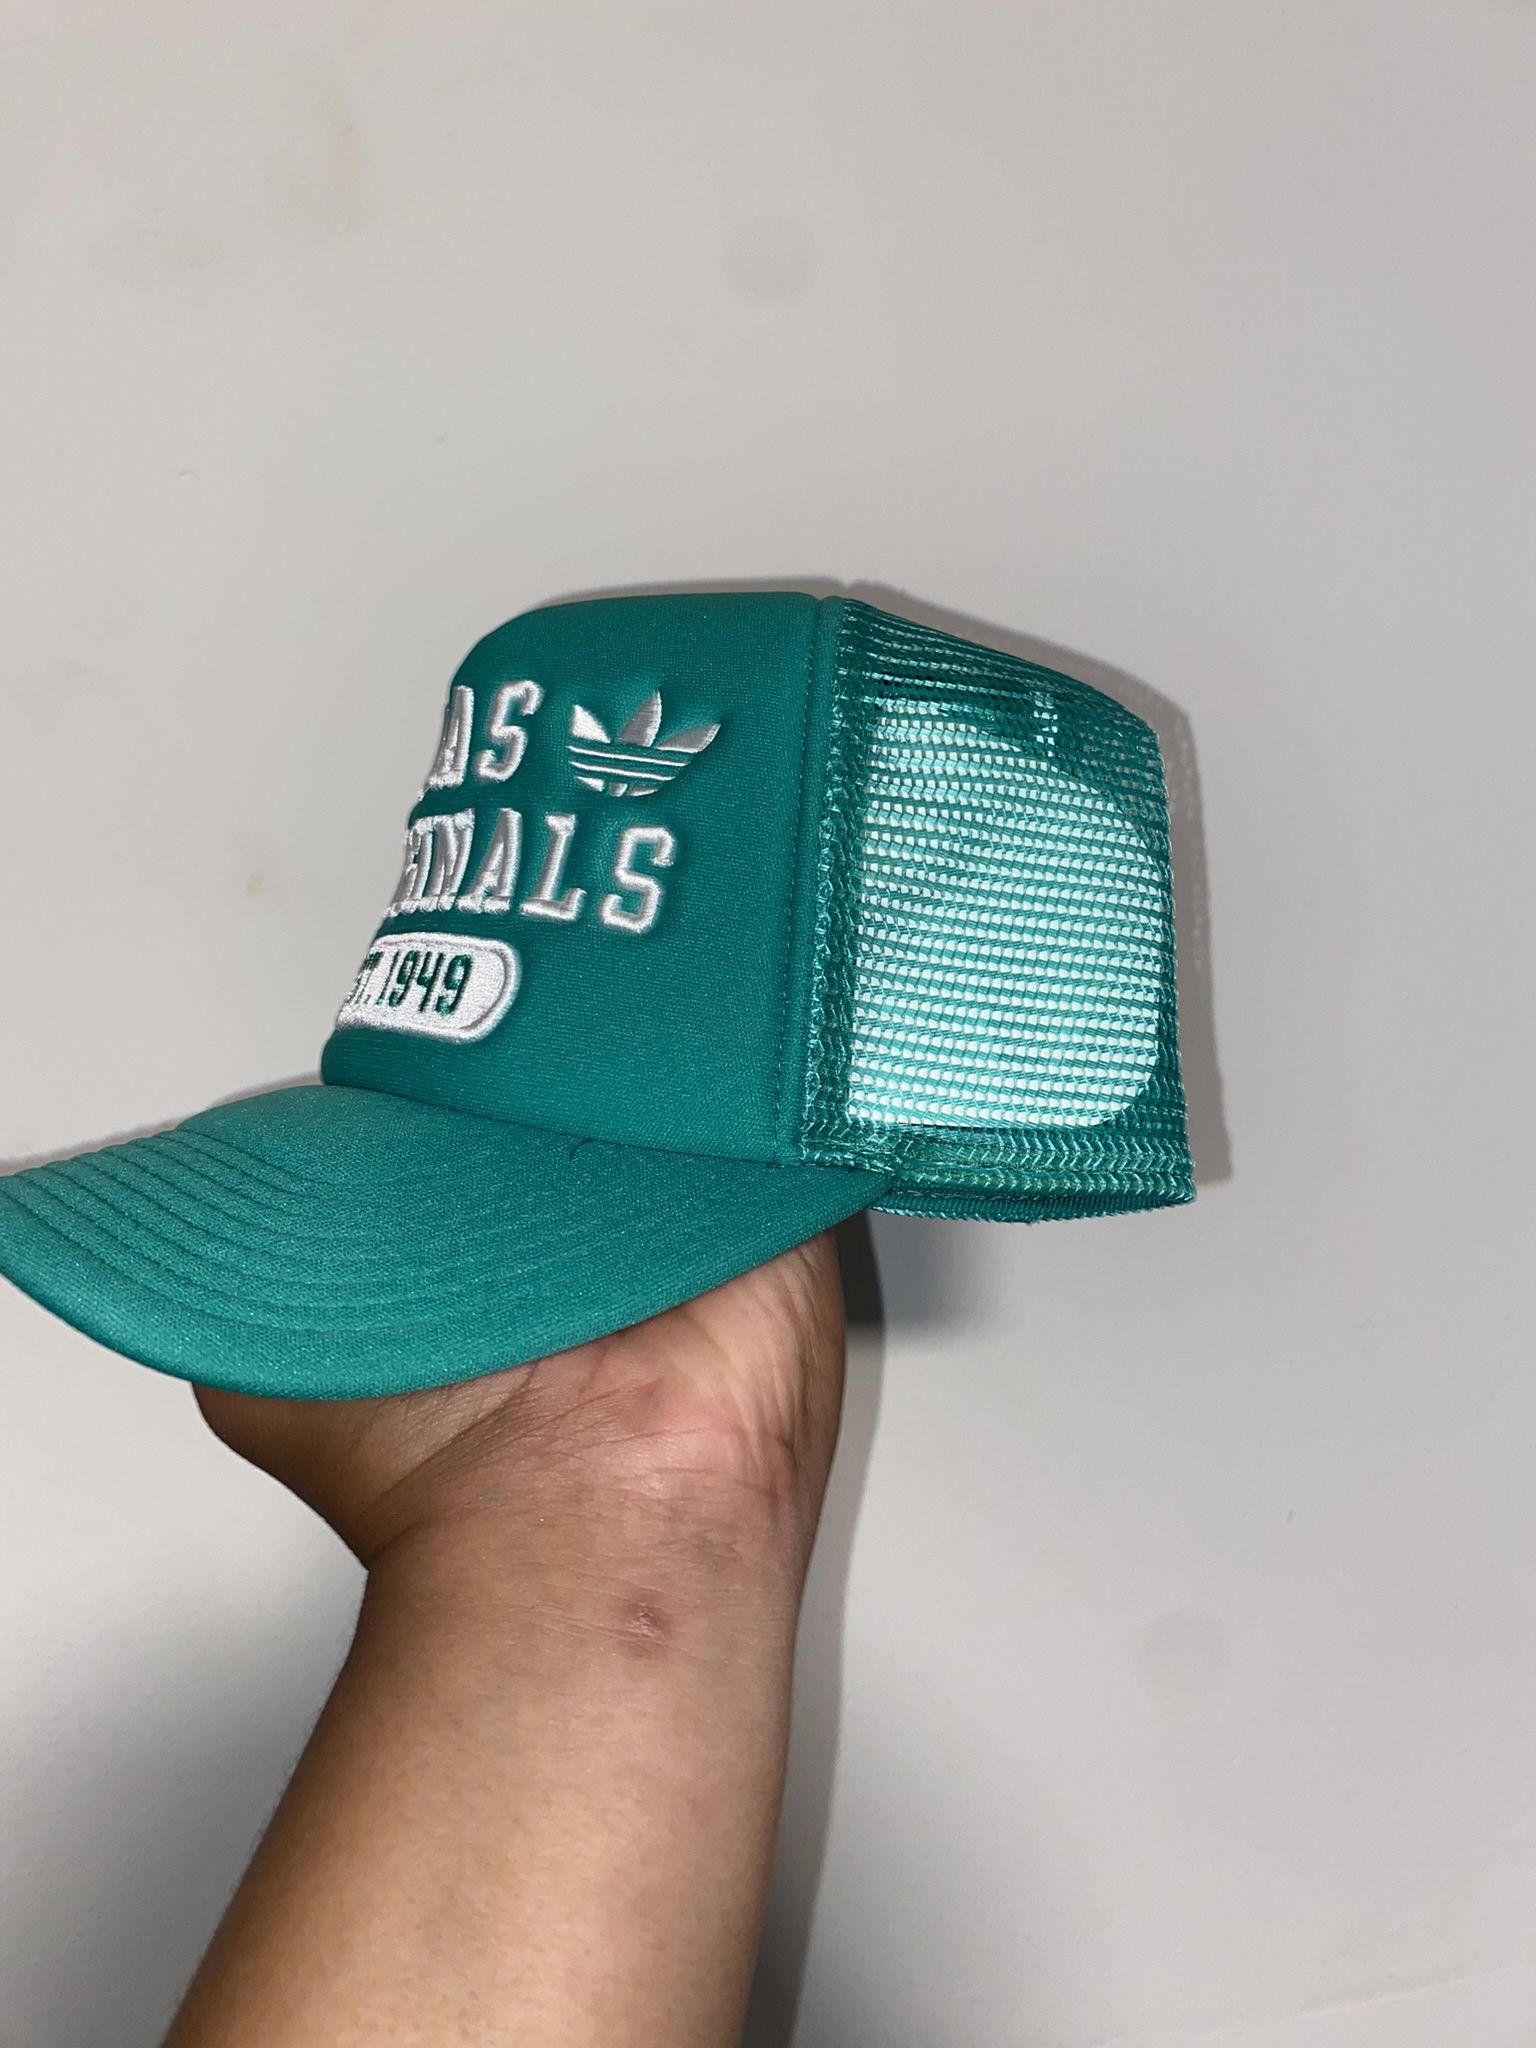 Of anders Boven hoofd en schouder Signaal Adidas Originals Hat for Sale in Oakland Park, FL - OfferUp